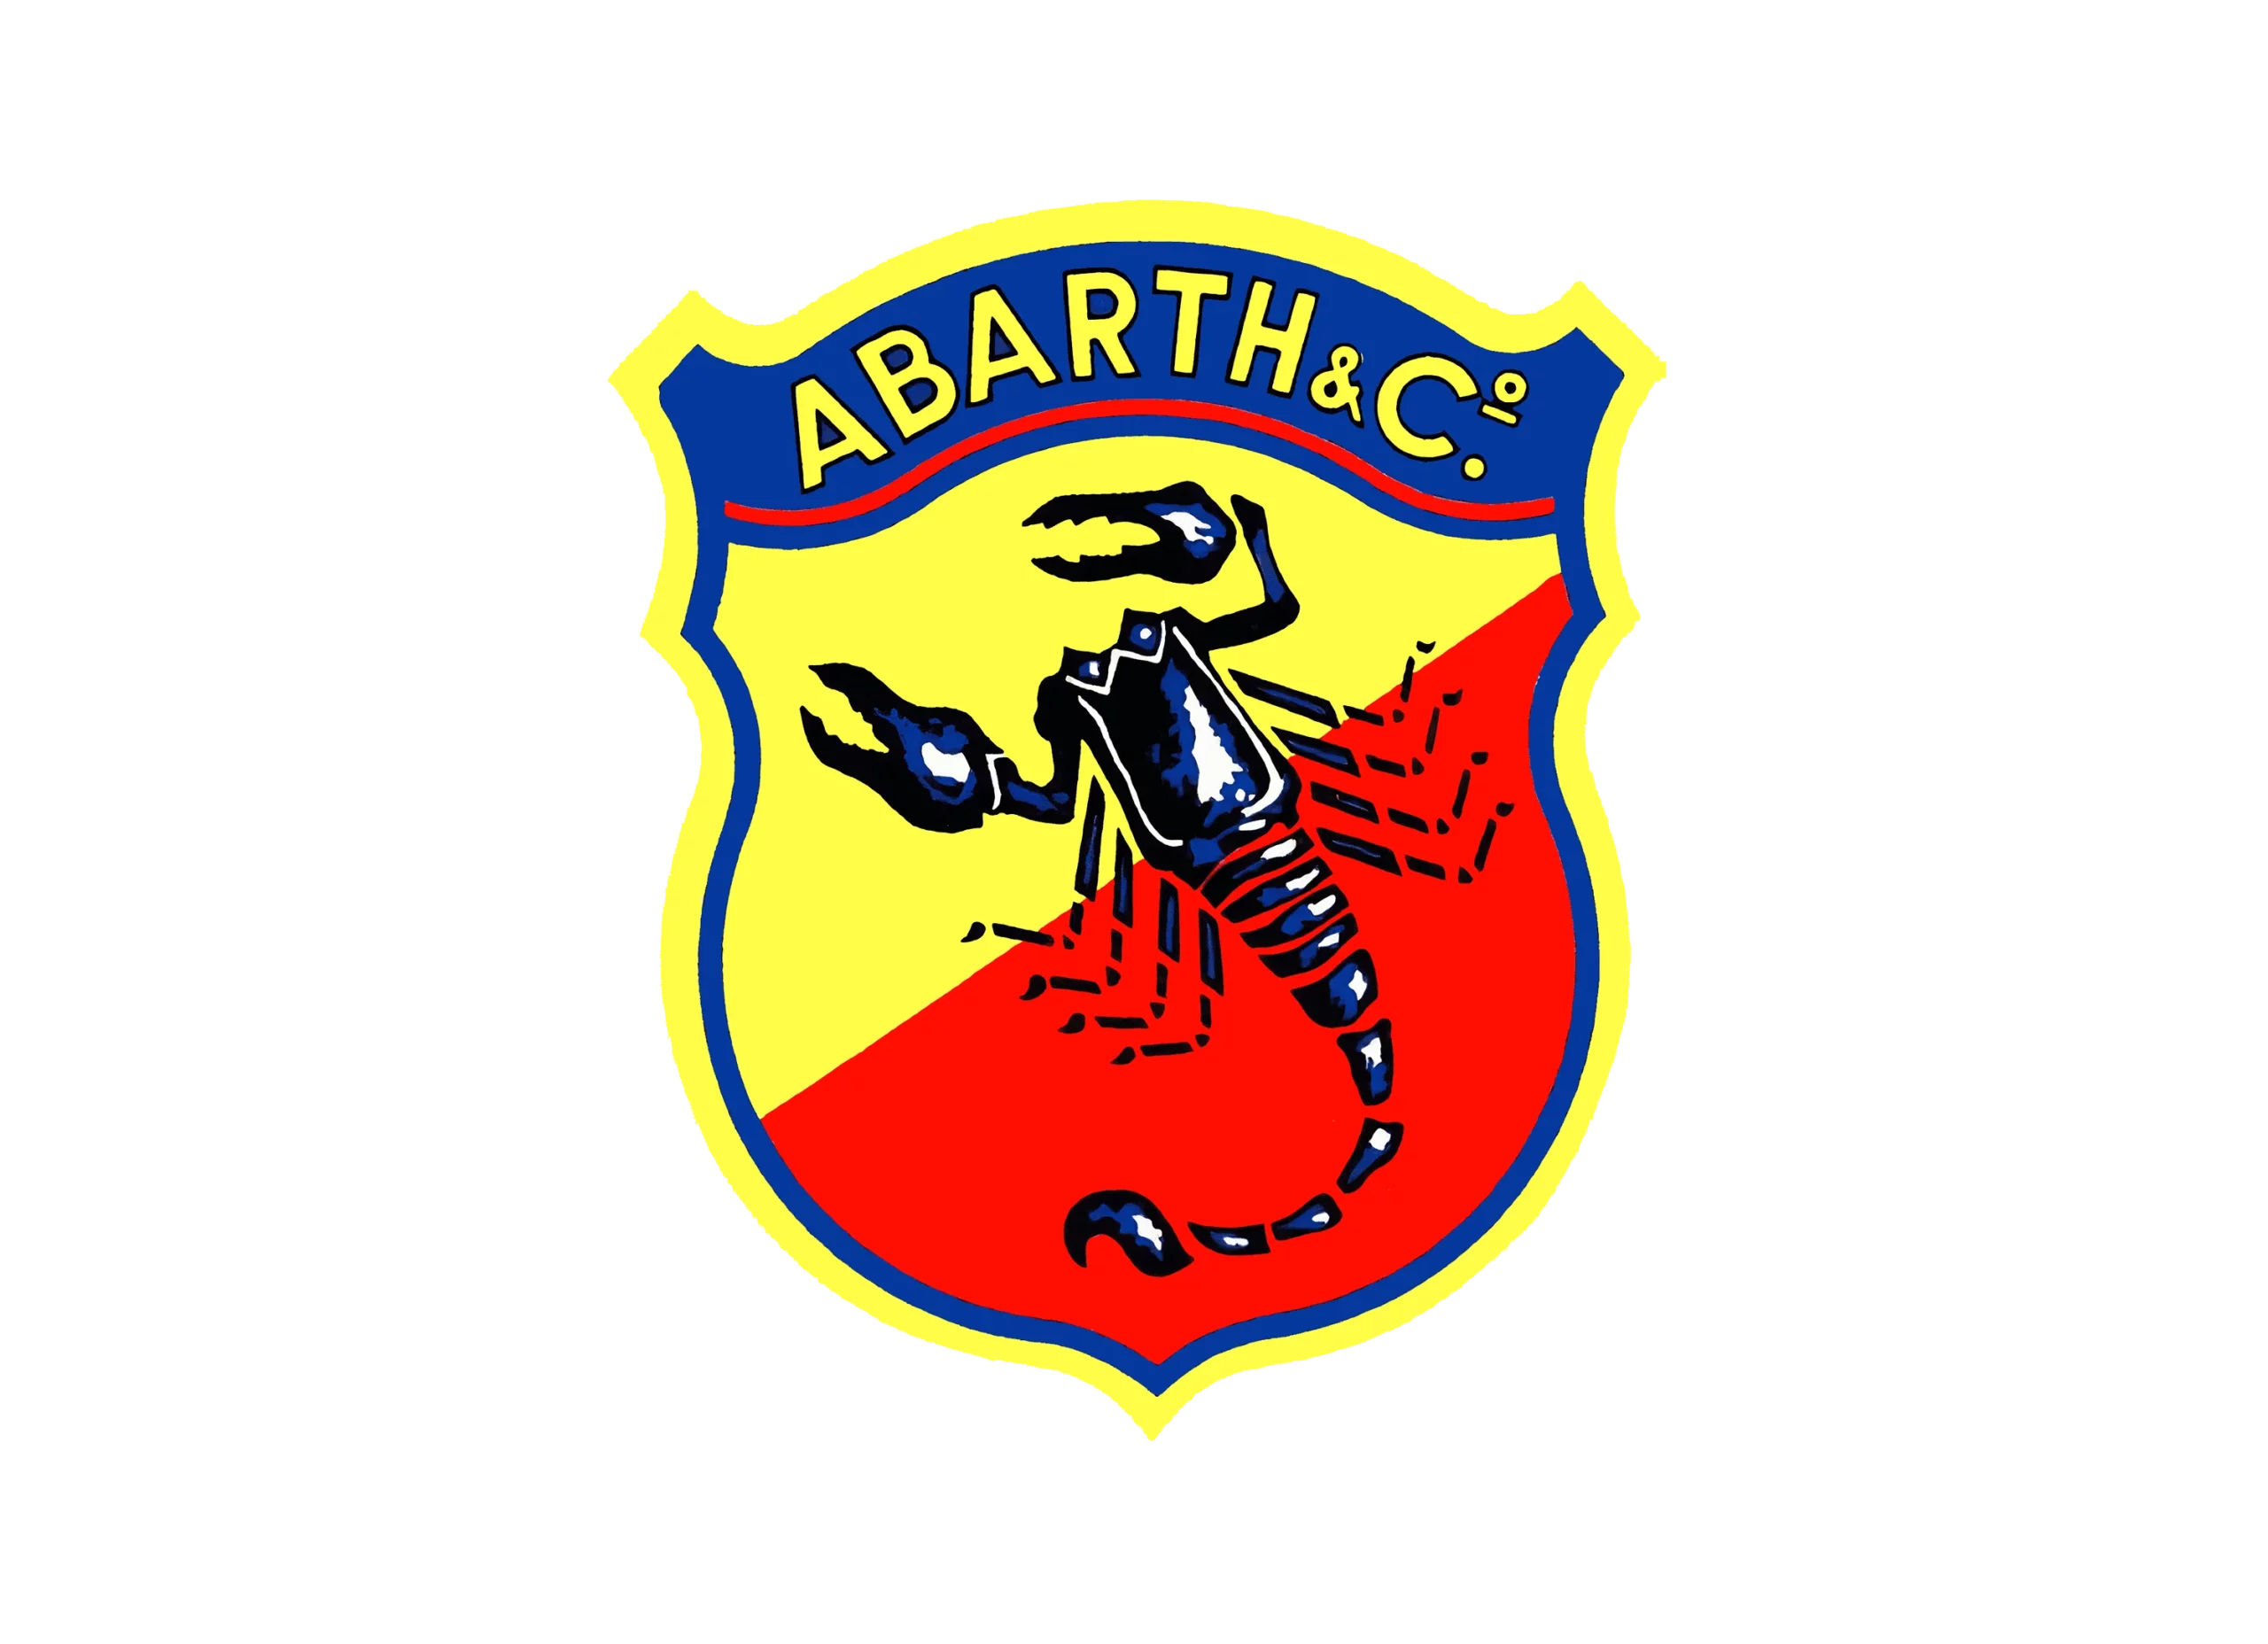 Abarth logo 1954-1961